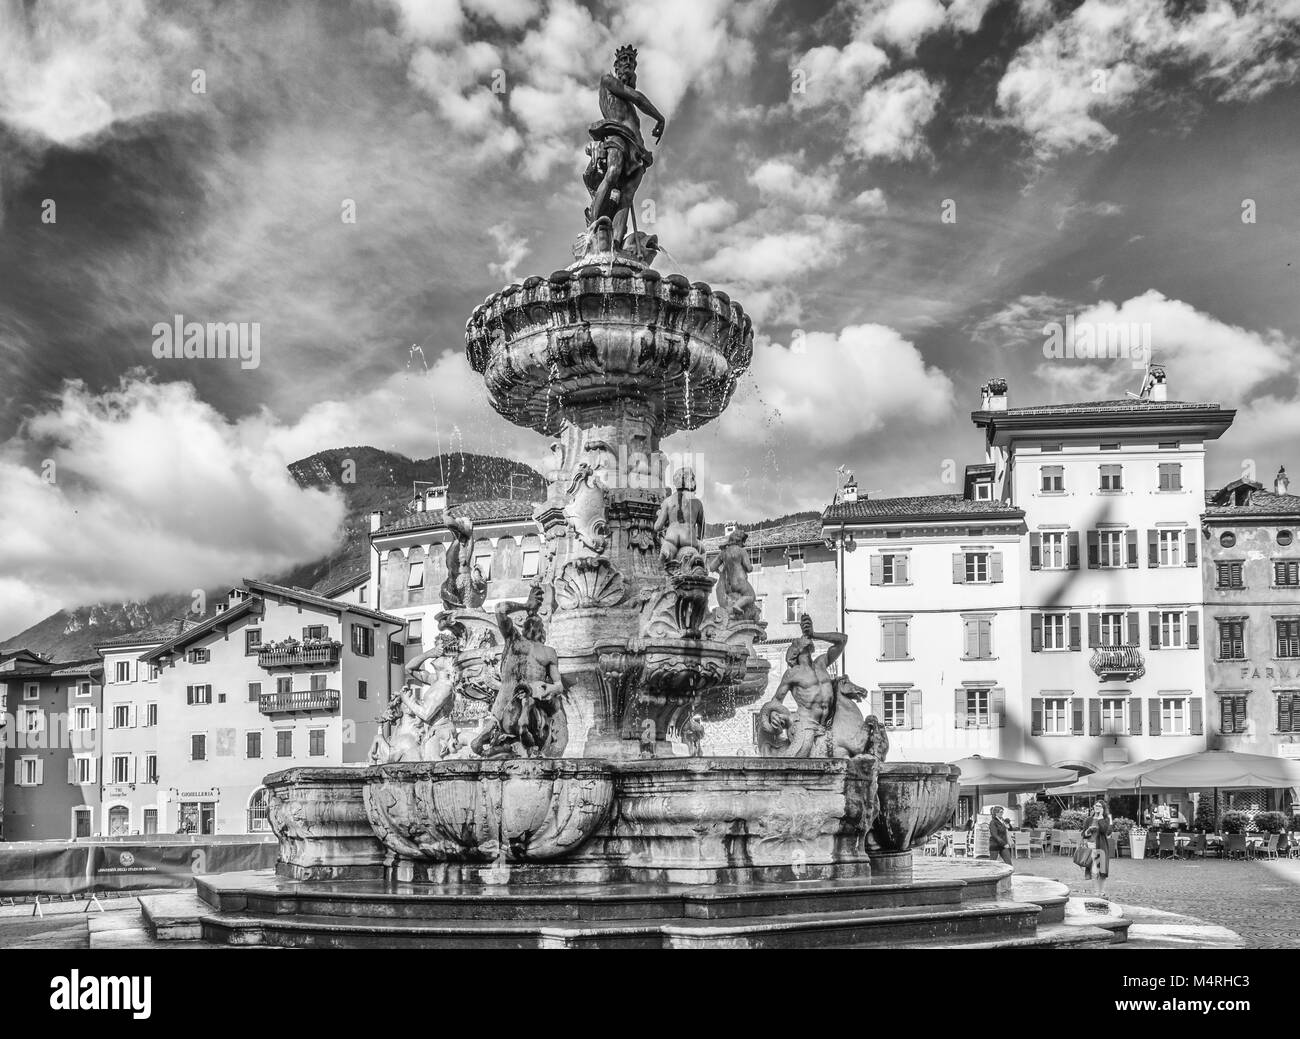 Trento città: Piazza Duomo, con la torre dell orologio e il tardo barocca fontana del Nettuno. Città in Trentino Alto Adige, Italia settentrionale, l'Europa. Foto Stock